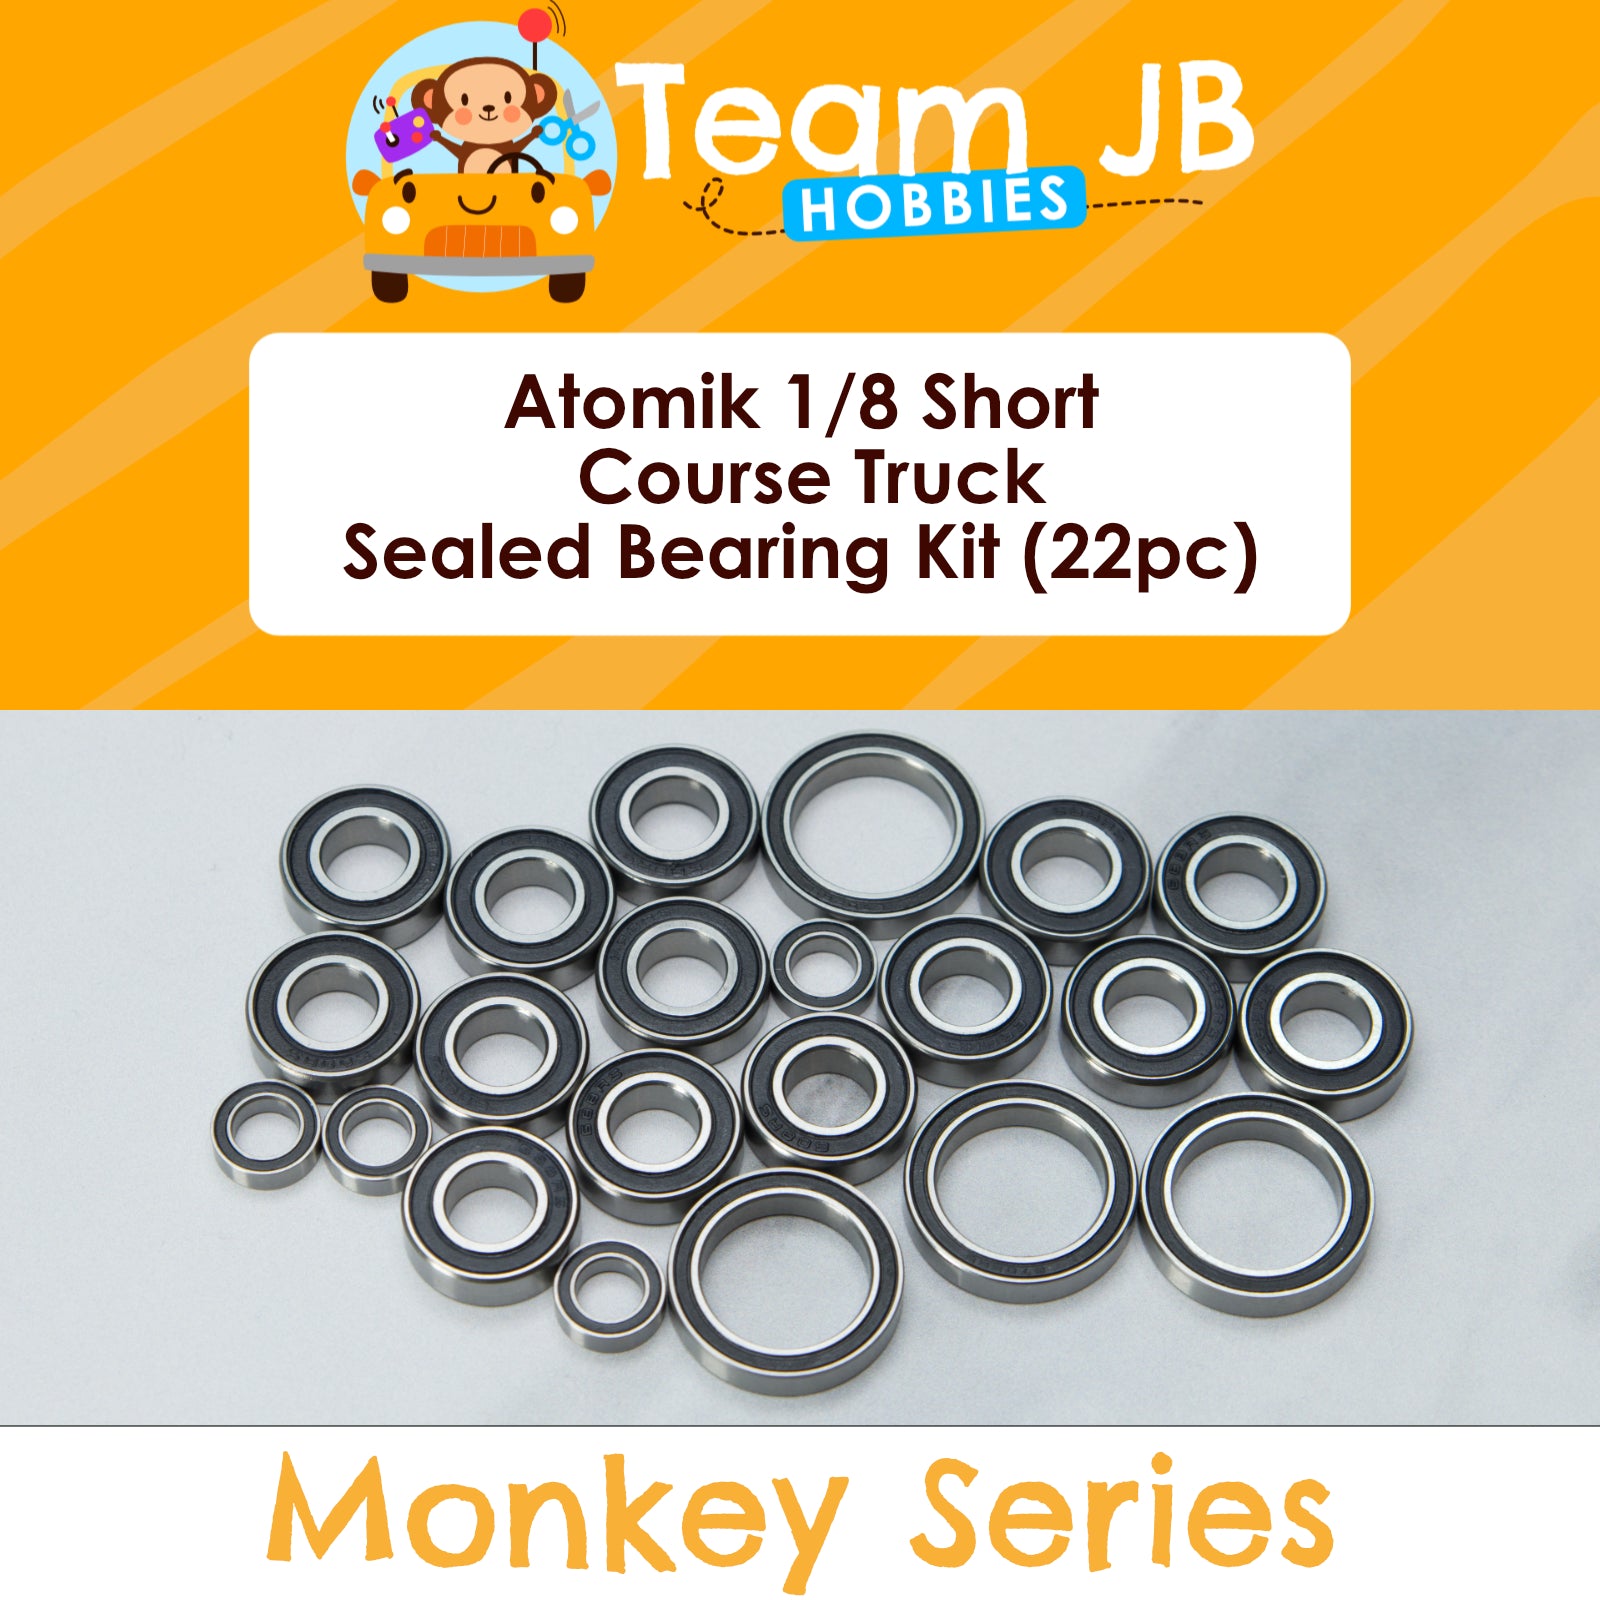 Atomik 1/8 Short Course Truck - Sealed Bearing Kit